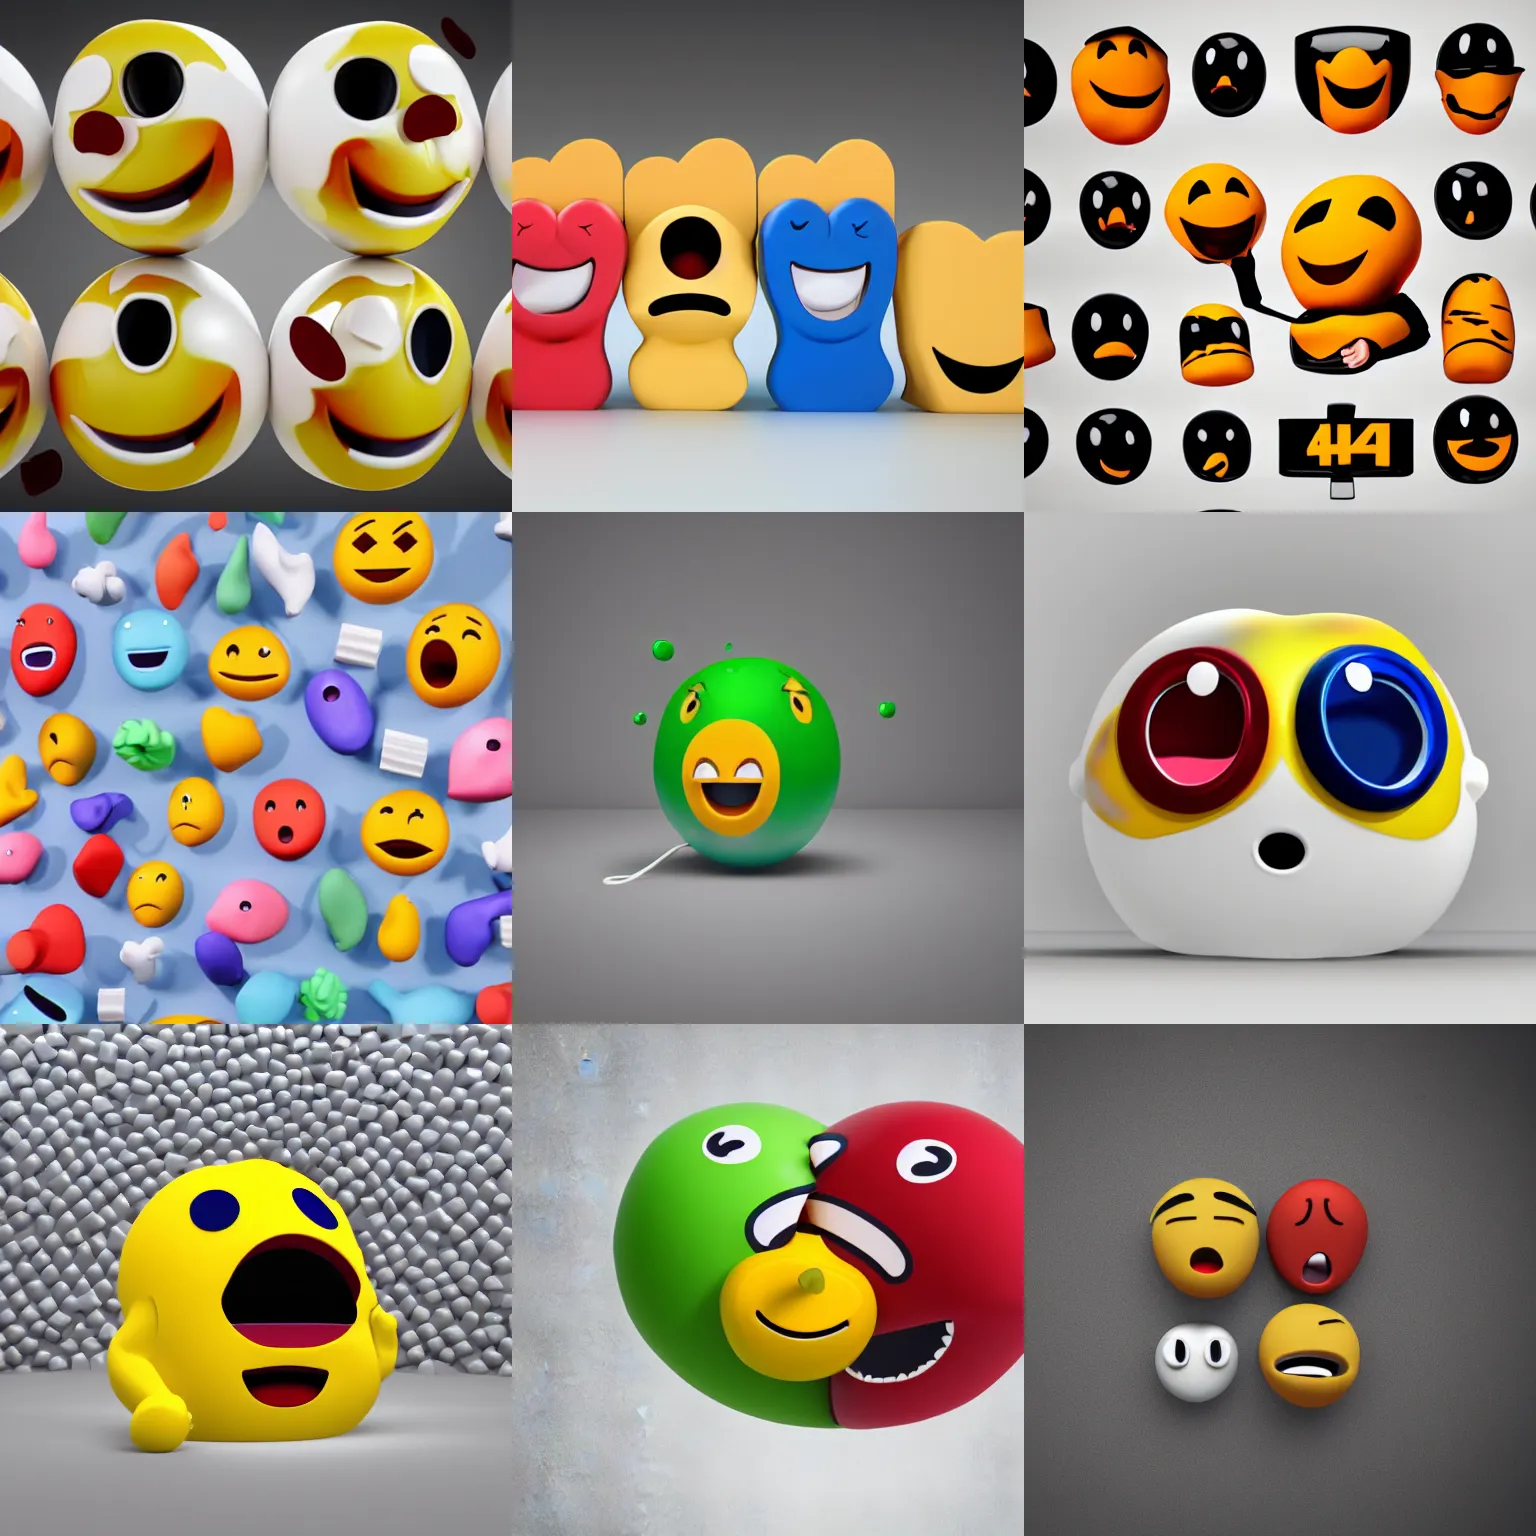 Prompt: vomiting emoji, 3d render, high quality, 4k, blender, white background, studio lighting